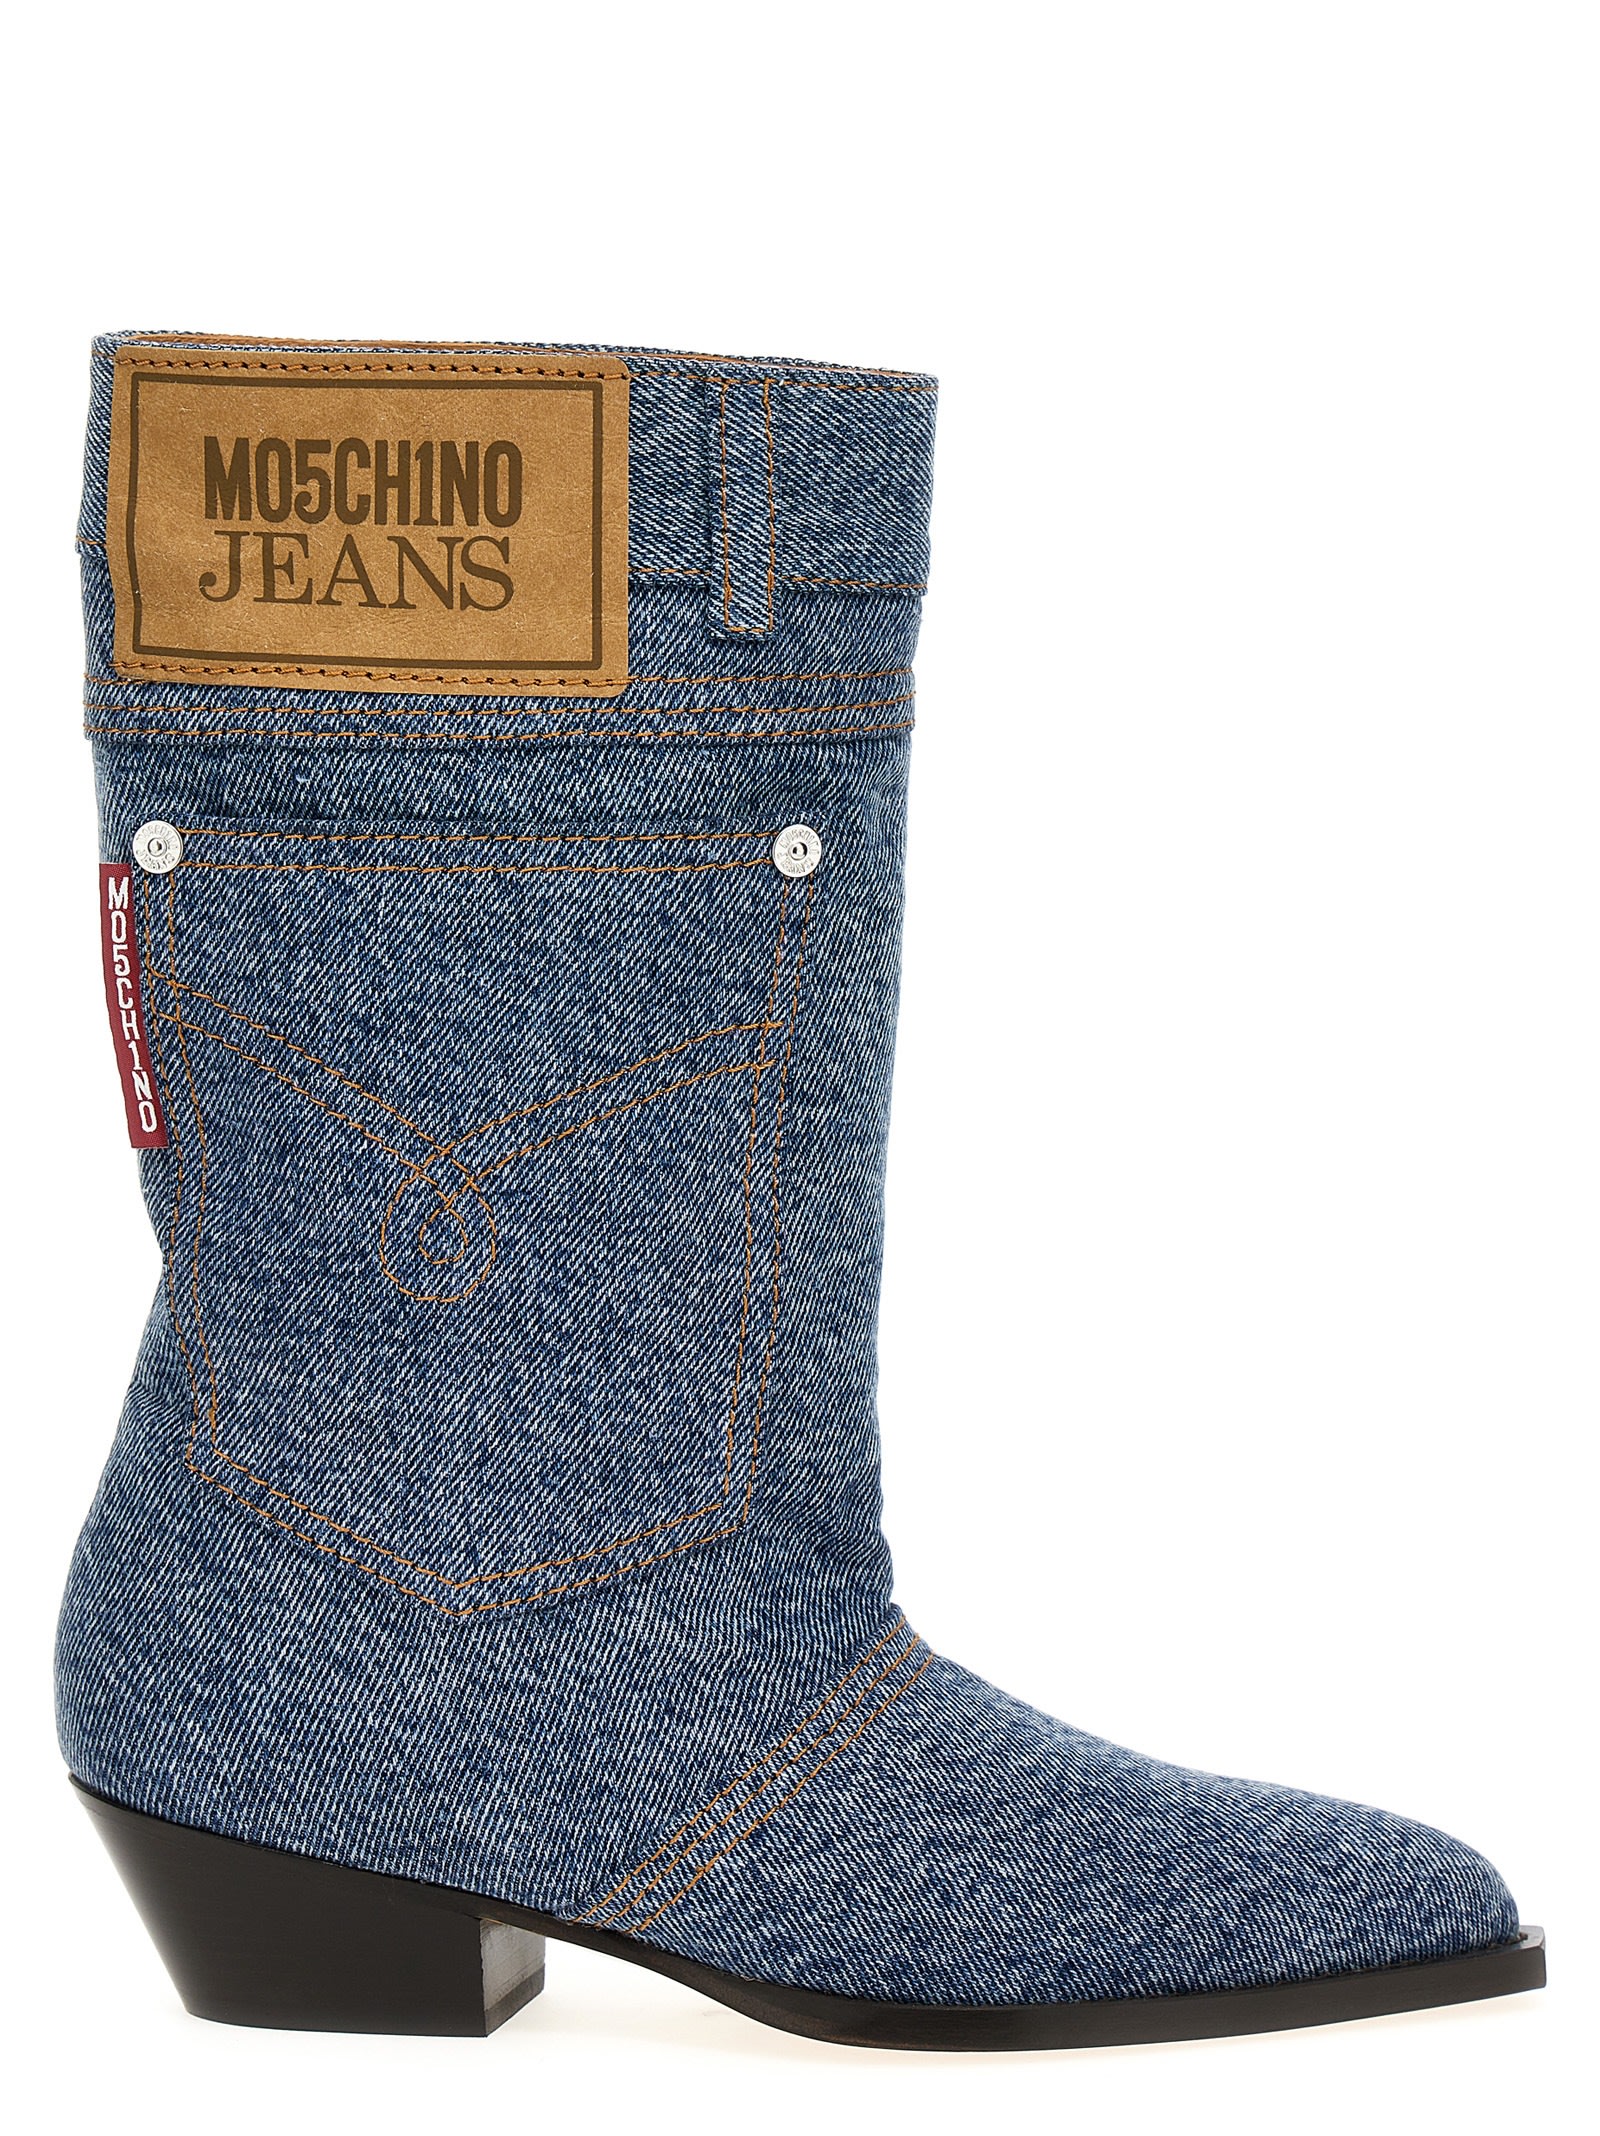 M05CH1N0 Jeans Texan Denim Boots